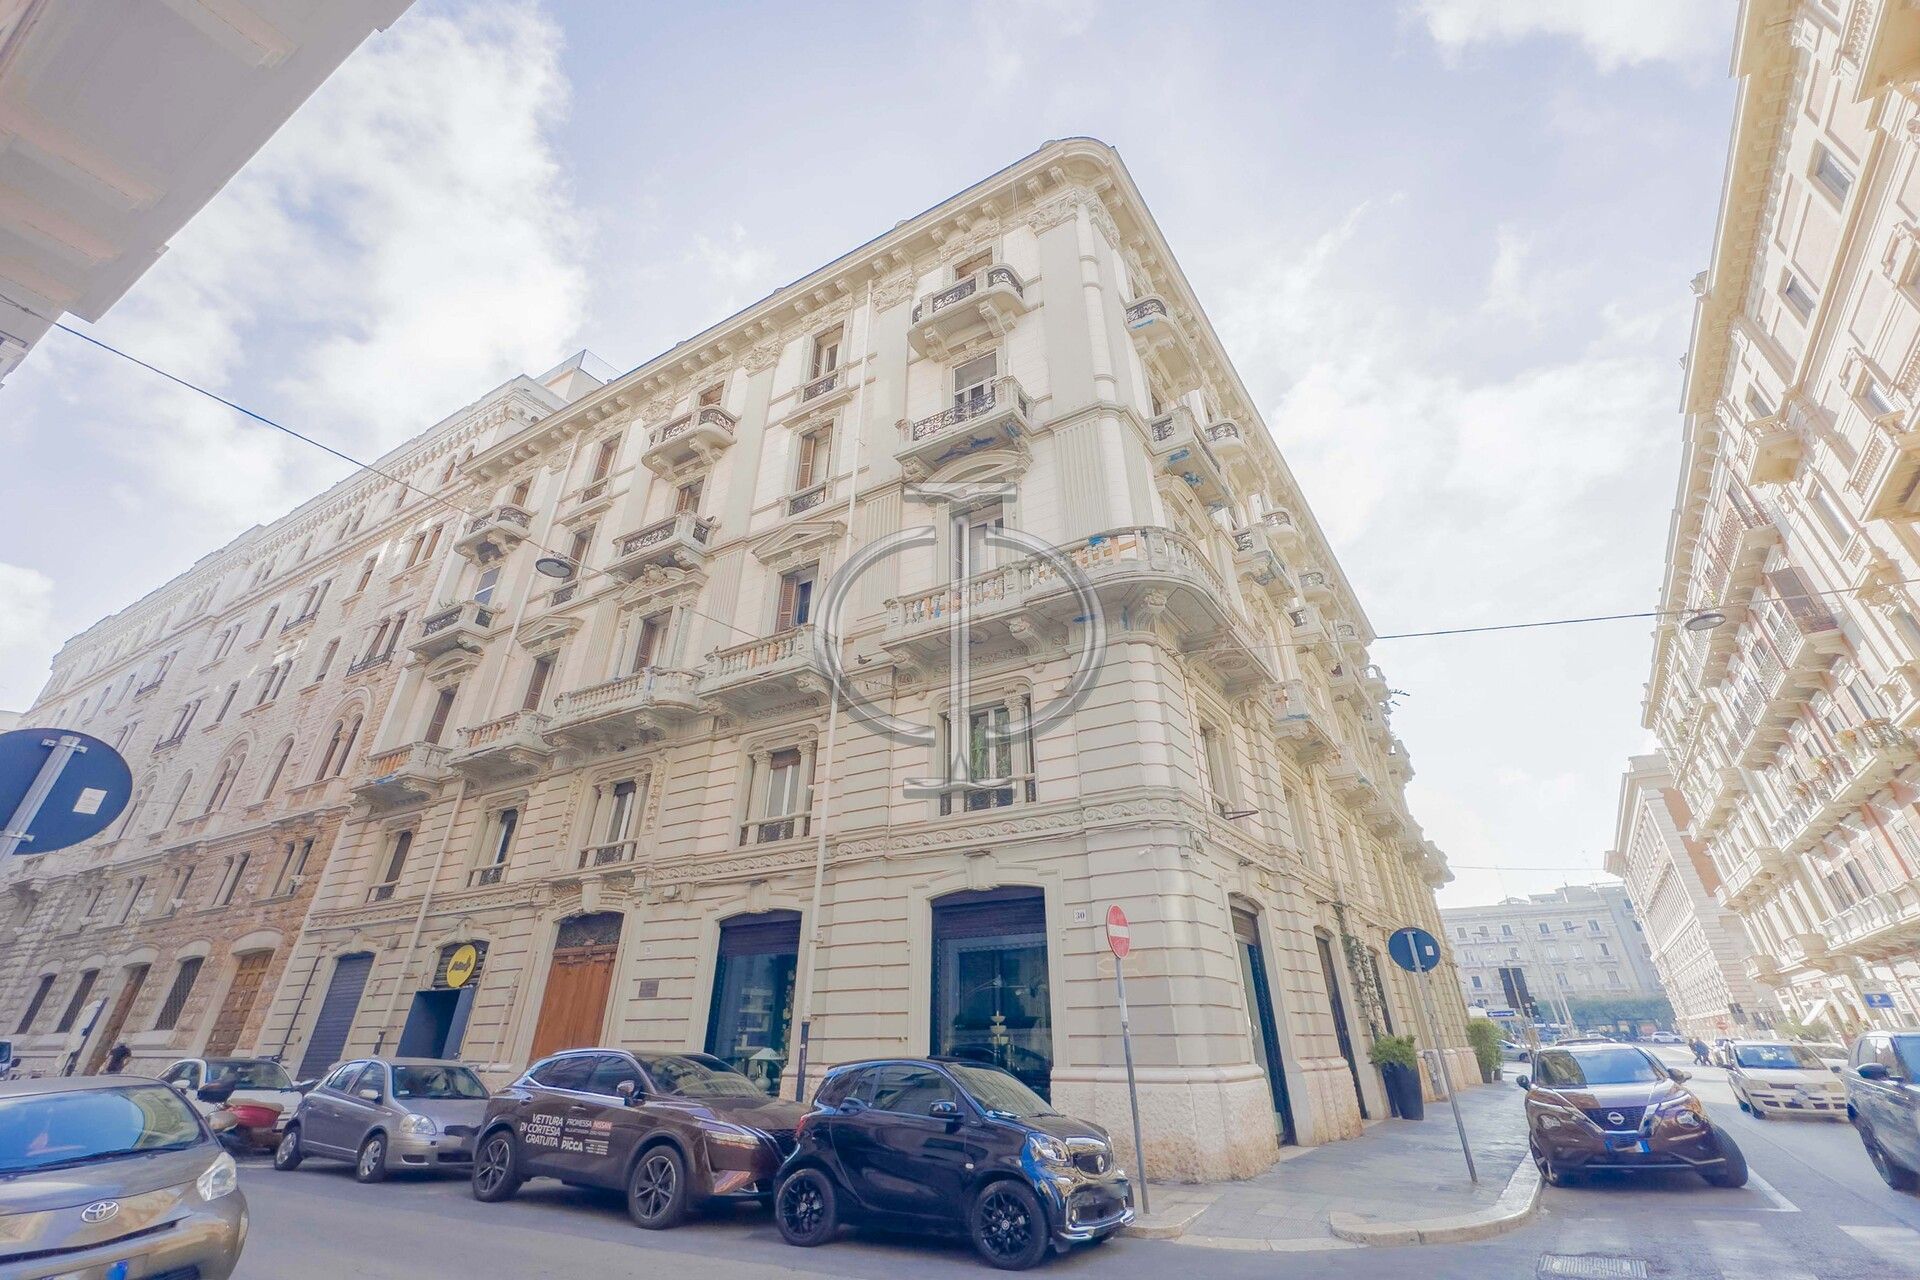 For sale apartment in city Bari Puglia